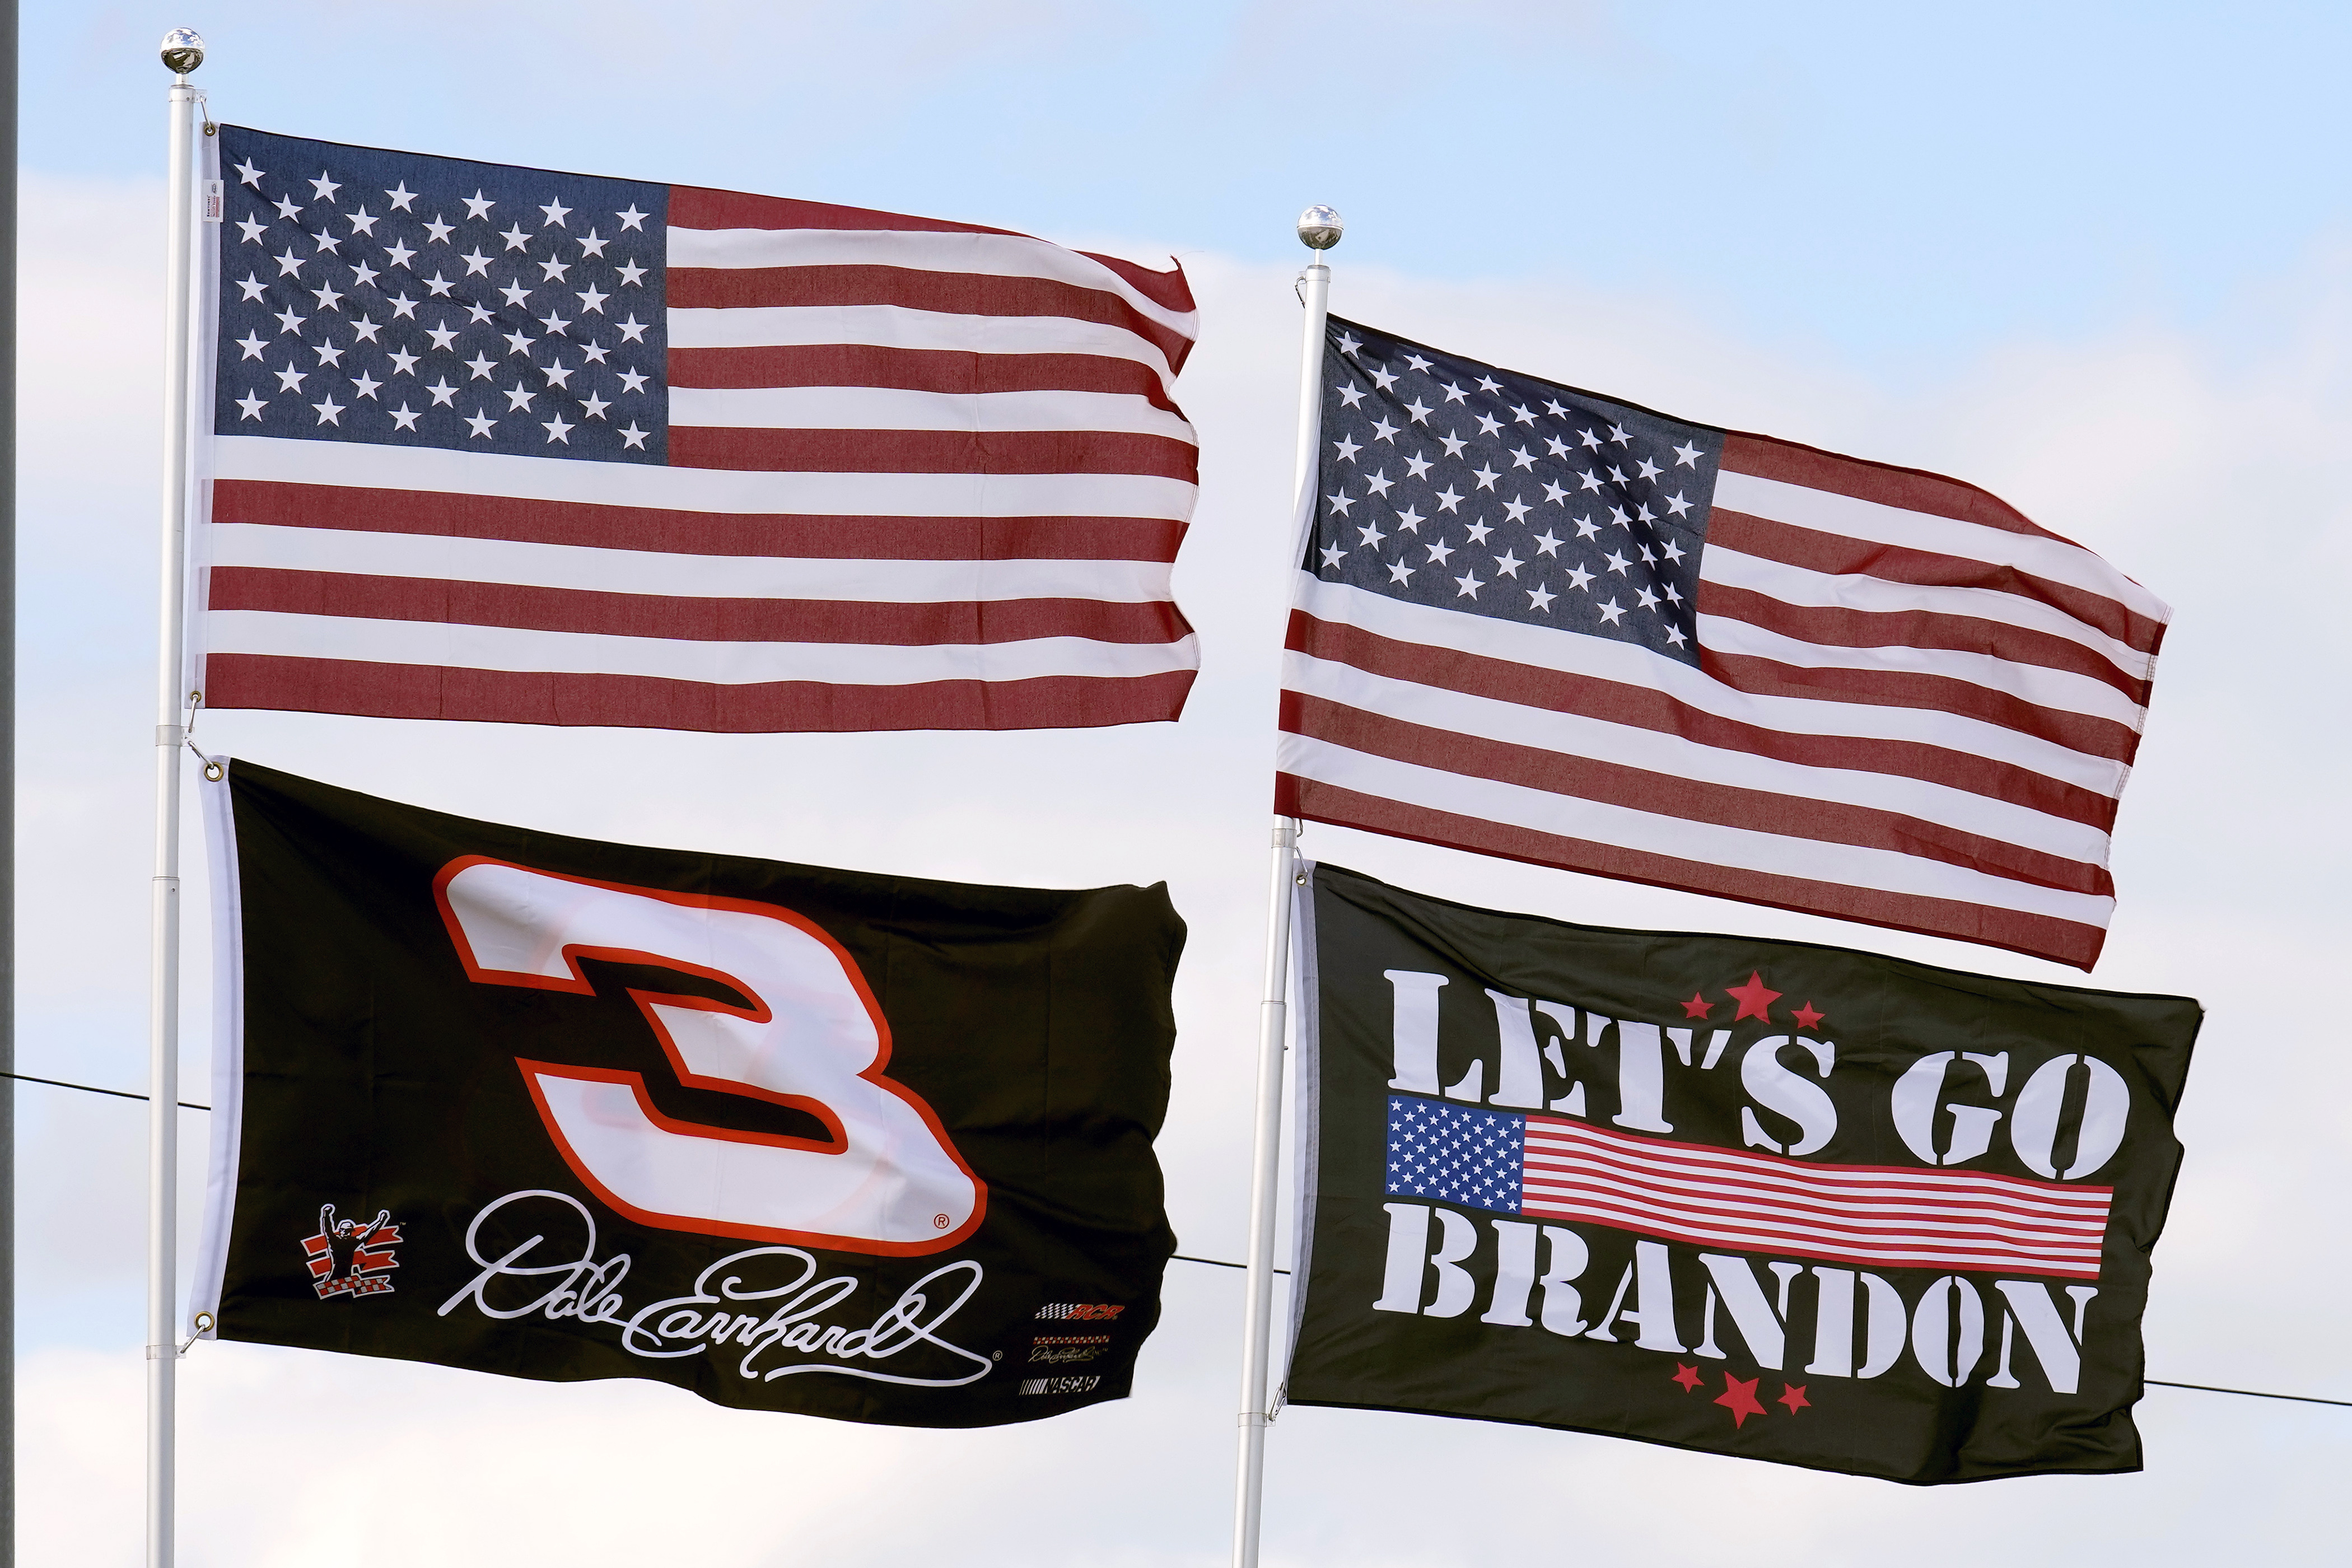 Let's Go Brandon' finds a way to sponsor NASCAR driver